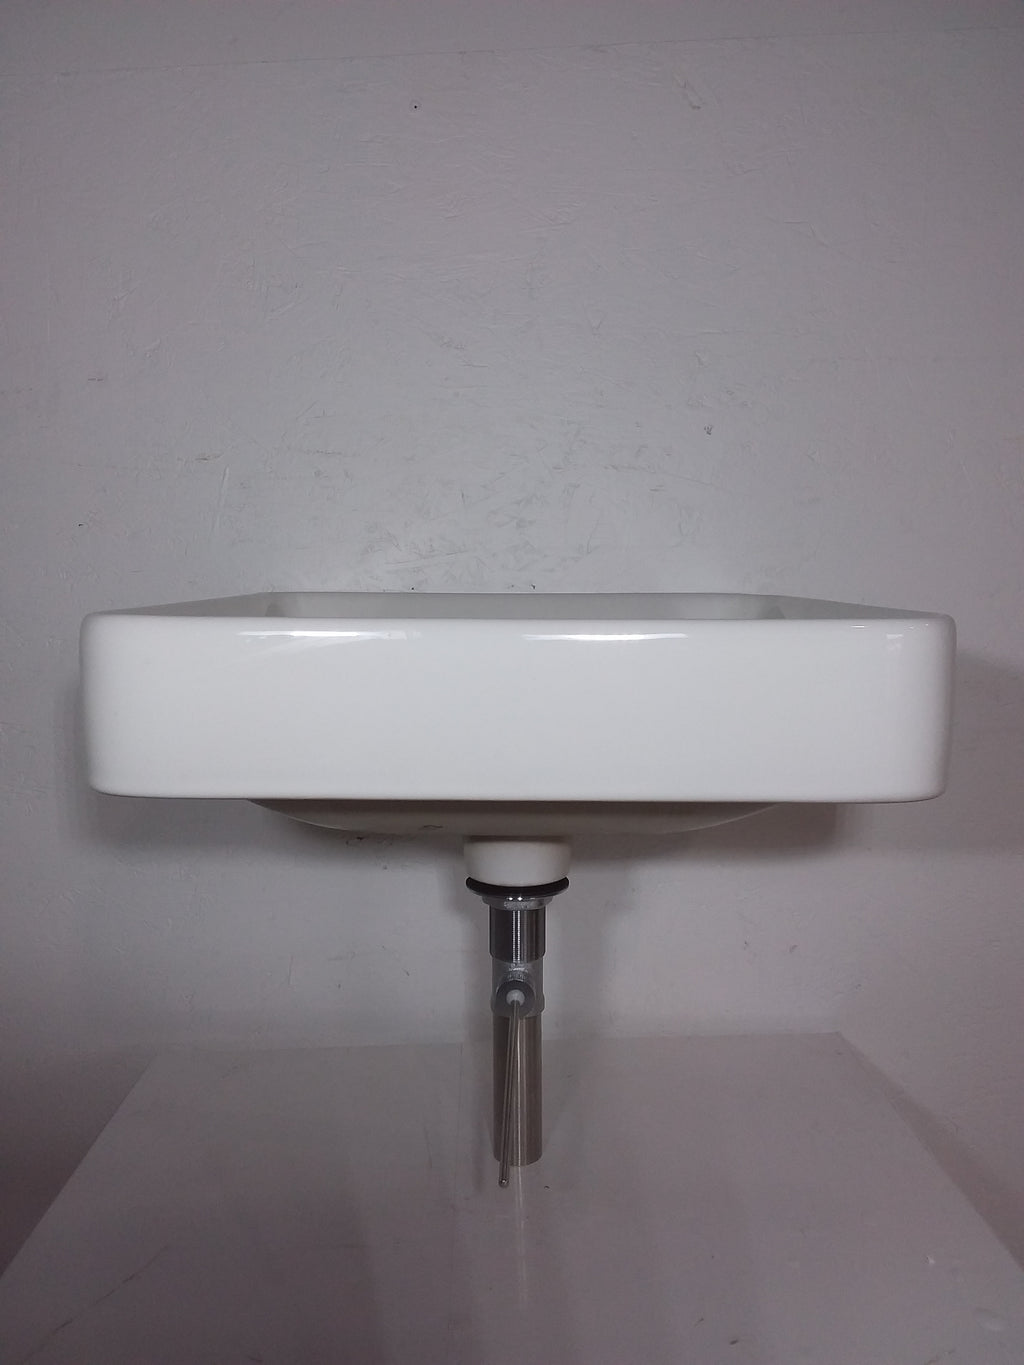 Kohler Vox Square Vessel Bathroom Sink